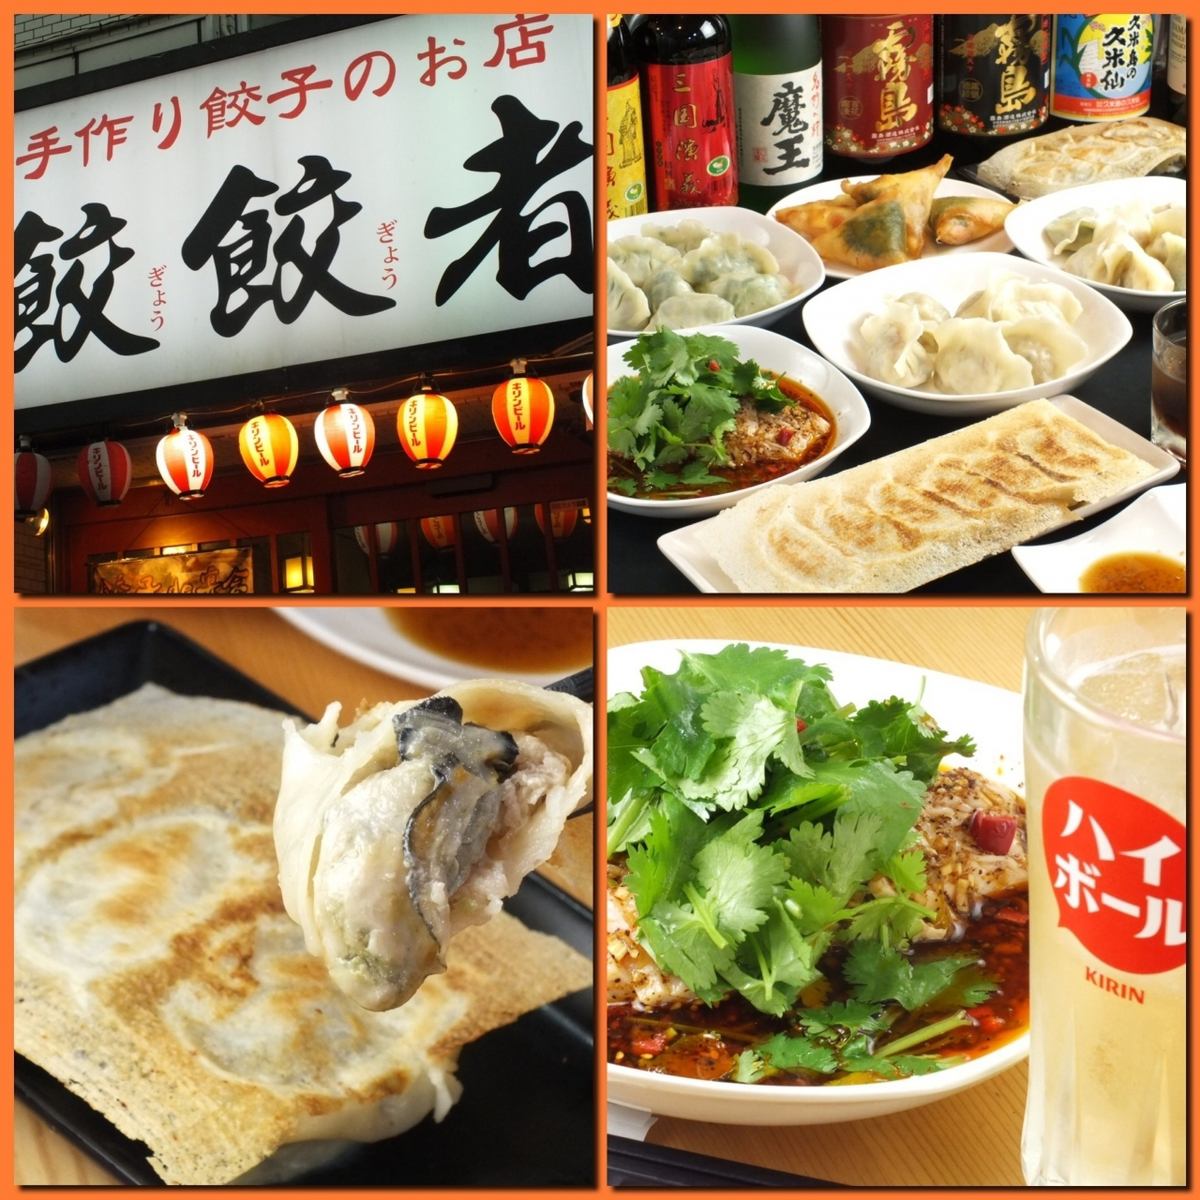 가와사키의 유명한 상점 ★ 수제 만두가 자랑의 가게 ★ 【40 종류 이상의】 만두 ★ 각종 연회 가능합니다 ★